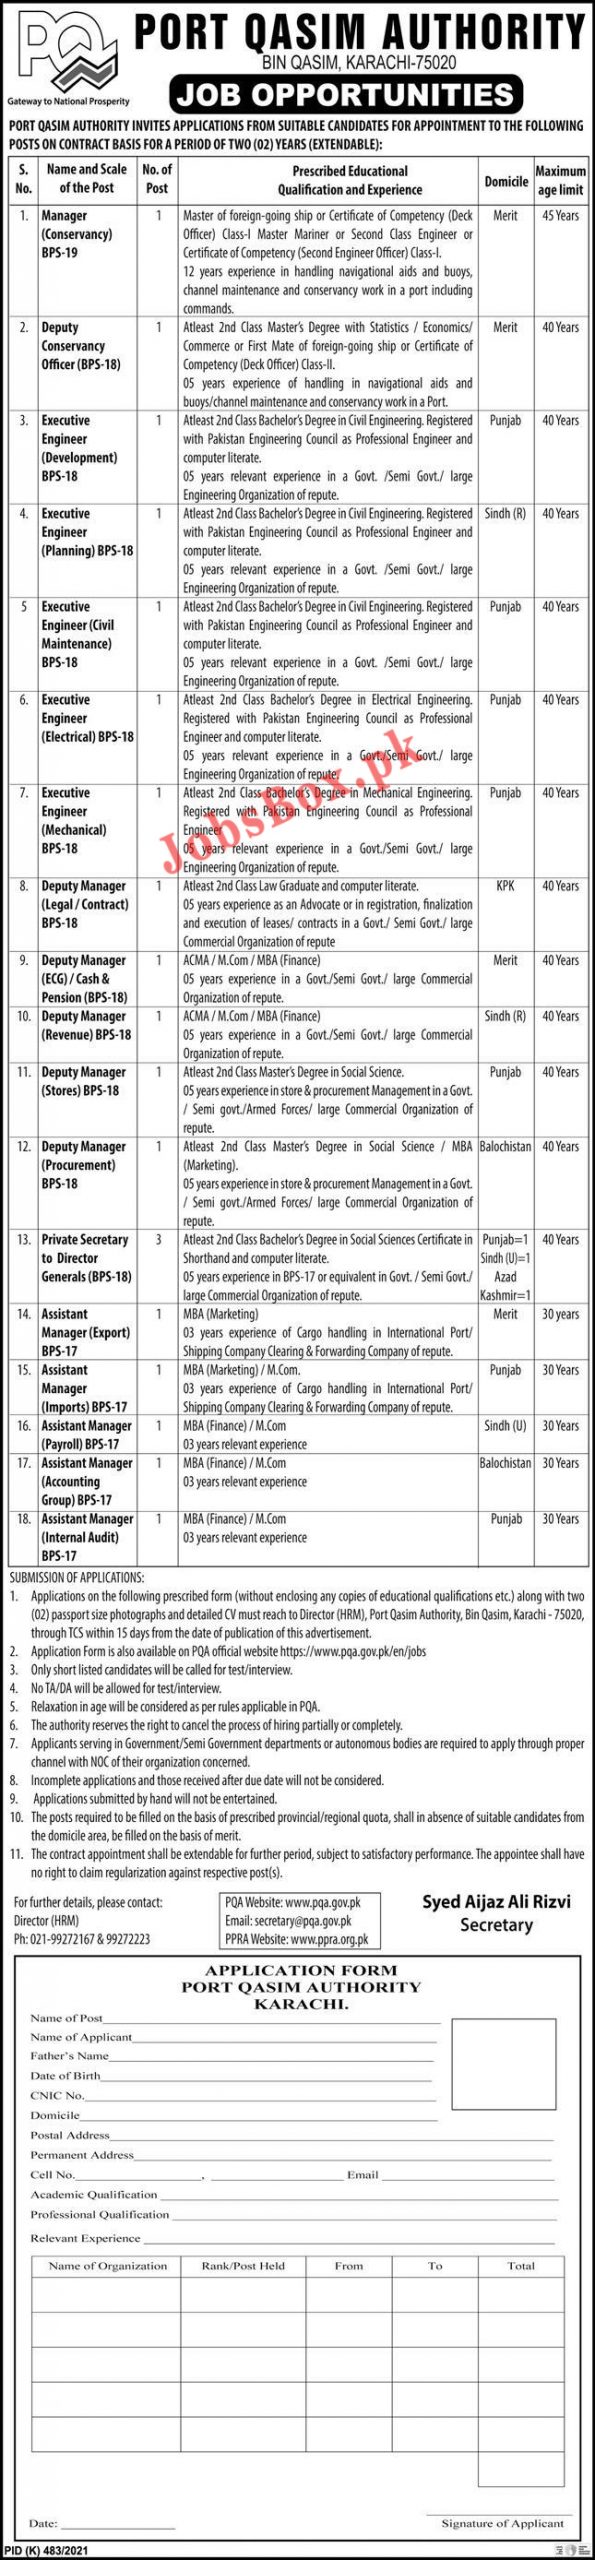 www.pqa.gov.pk jobs 2021 - PQA Port Qasim Authority Jobs 2021 in Pakistan